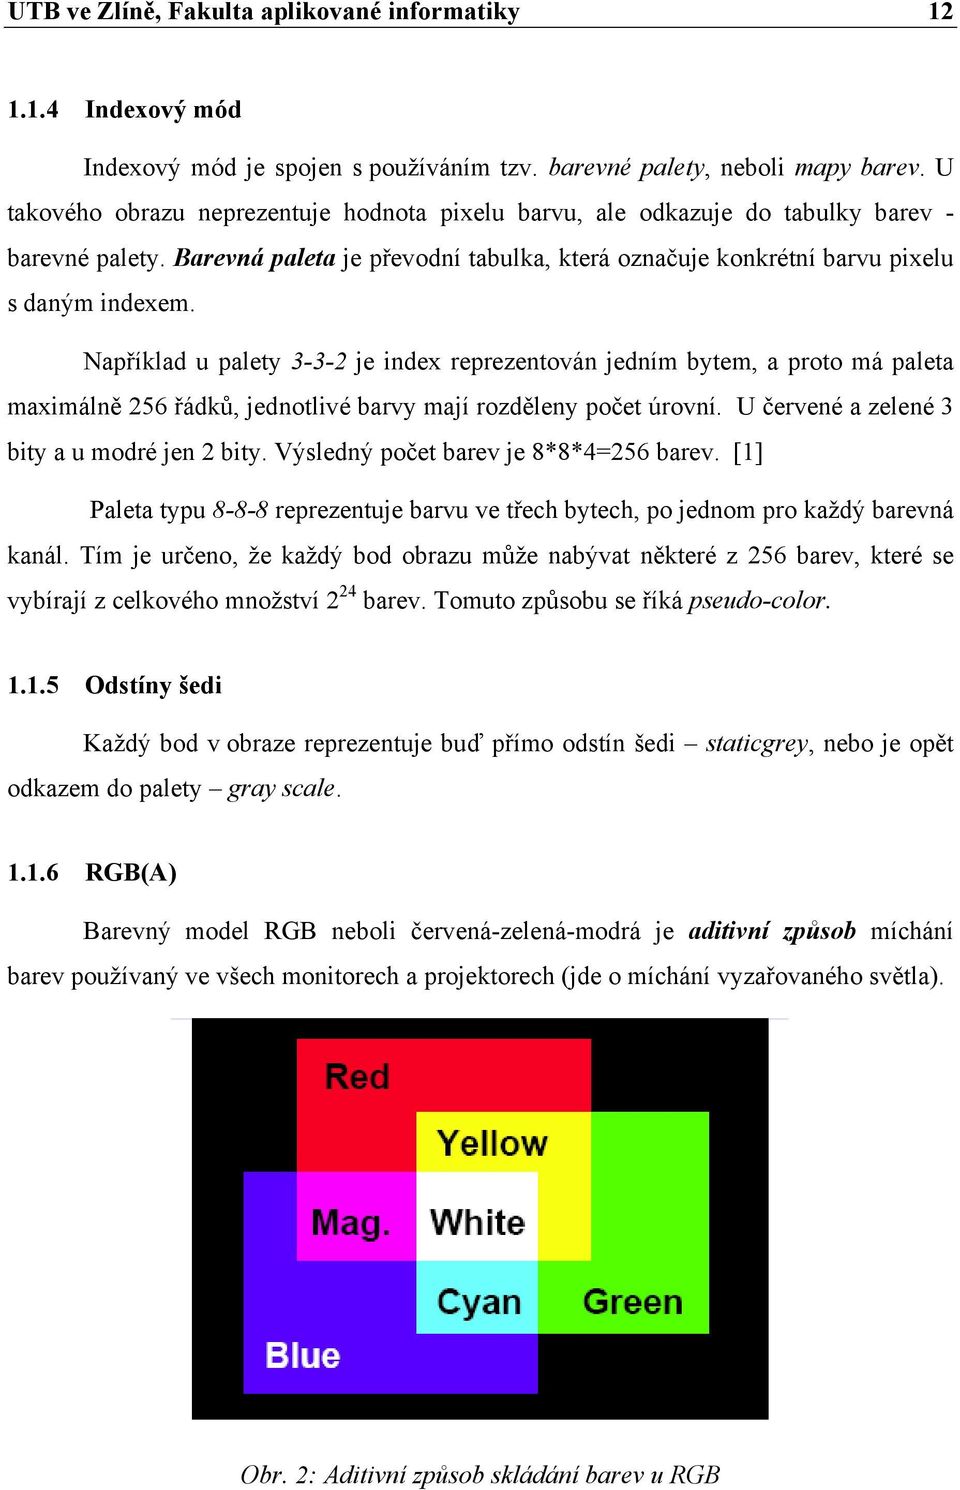 Například u palety 3-3-2 je index reprezentován jedním bytem, a proto má paleta maximálně 256 řádků, jednotlivé barvy mají rozděleny počet úrovní. U červené a zelené 3 bity a u modré jen 2 bity.